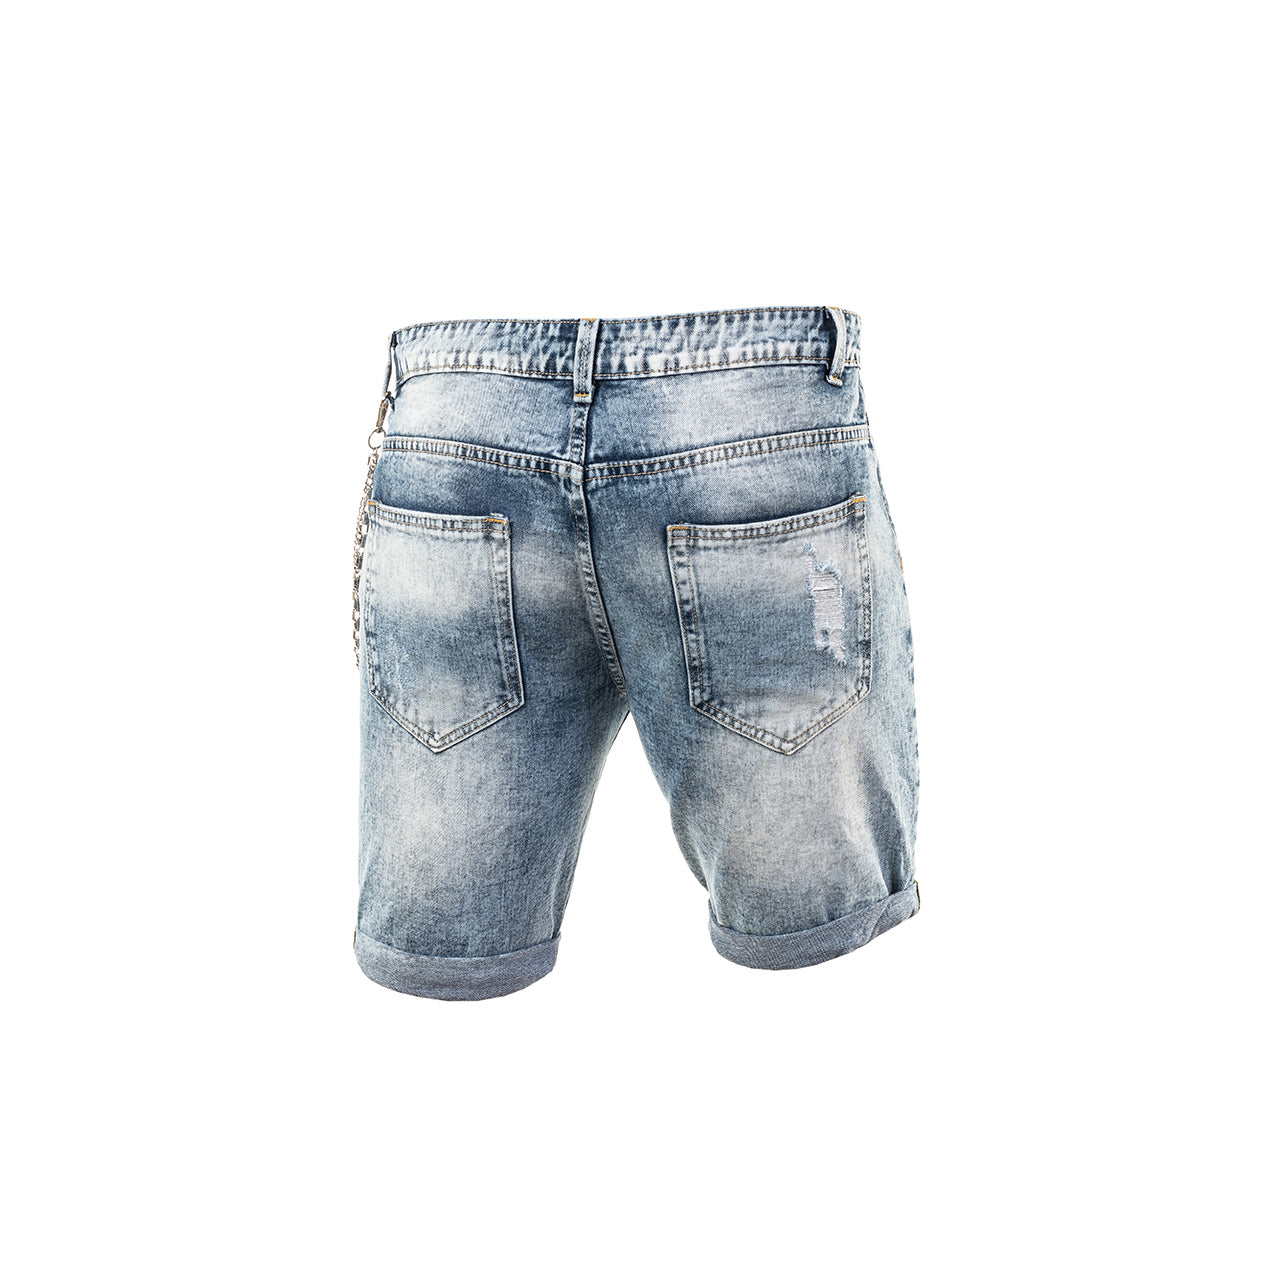 Ανδρική Βερμούδα Jeans με Σκισίματα (3232) - Panda Clothing